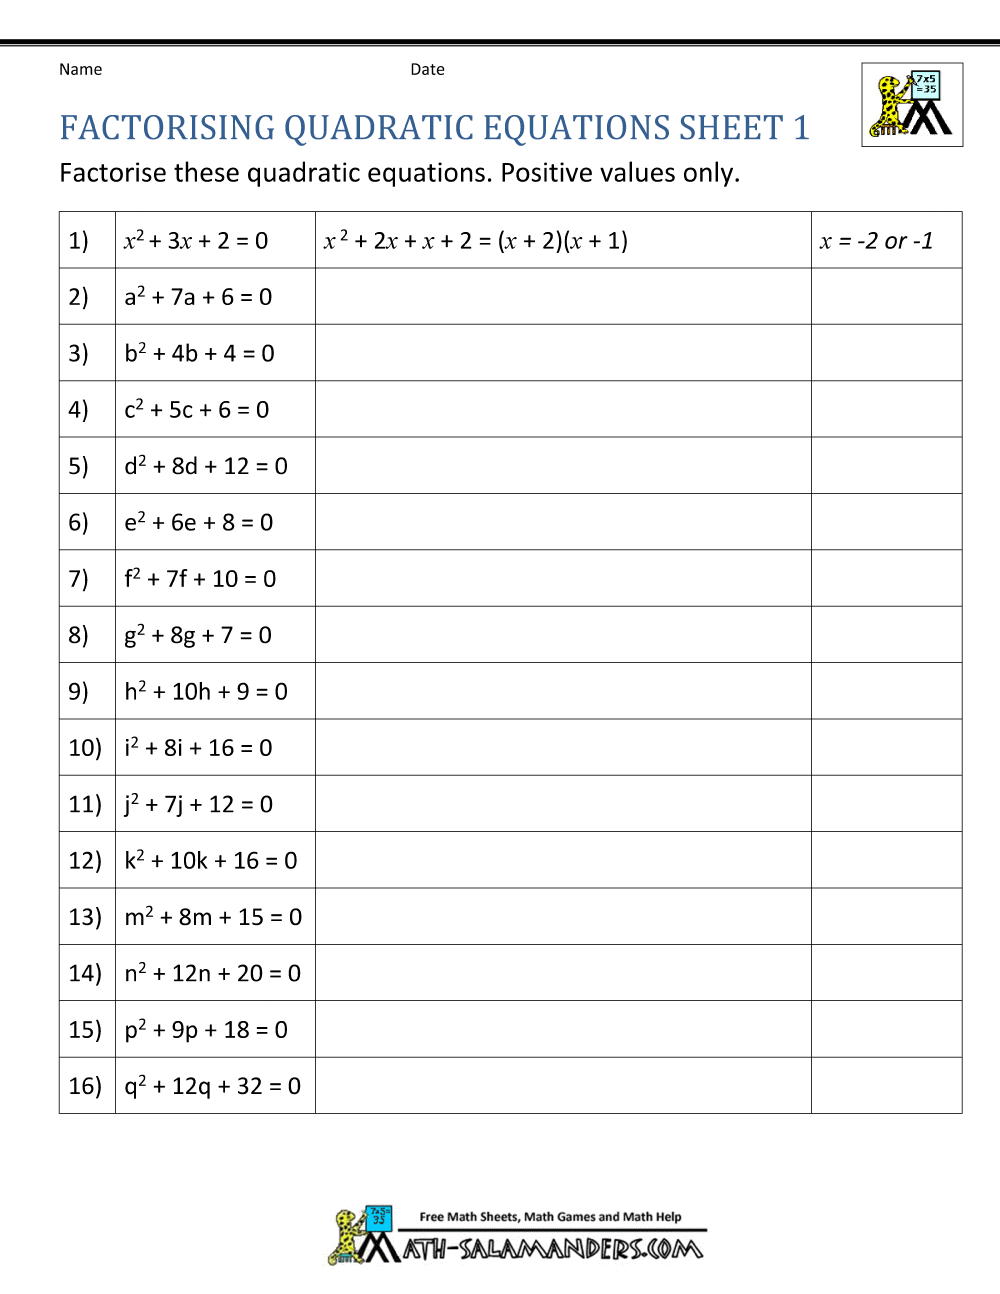 Factoring Quadratic Equations Worksheets Within Factoring Quadratic Expressions Worksheet